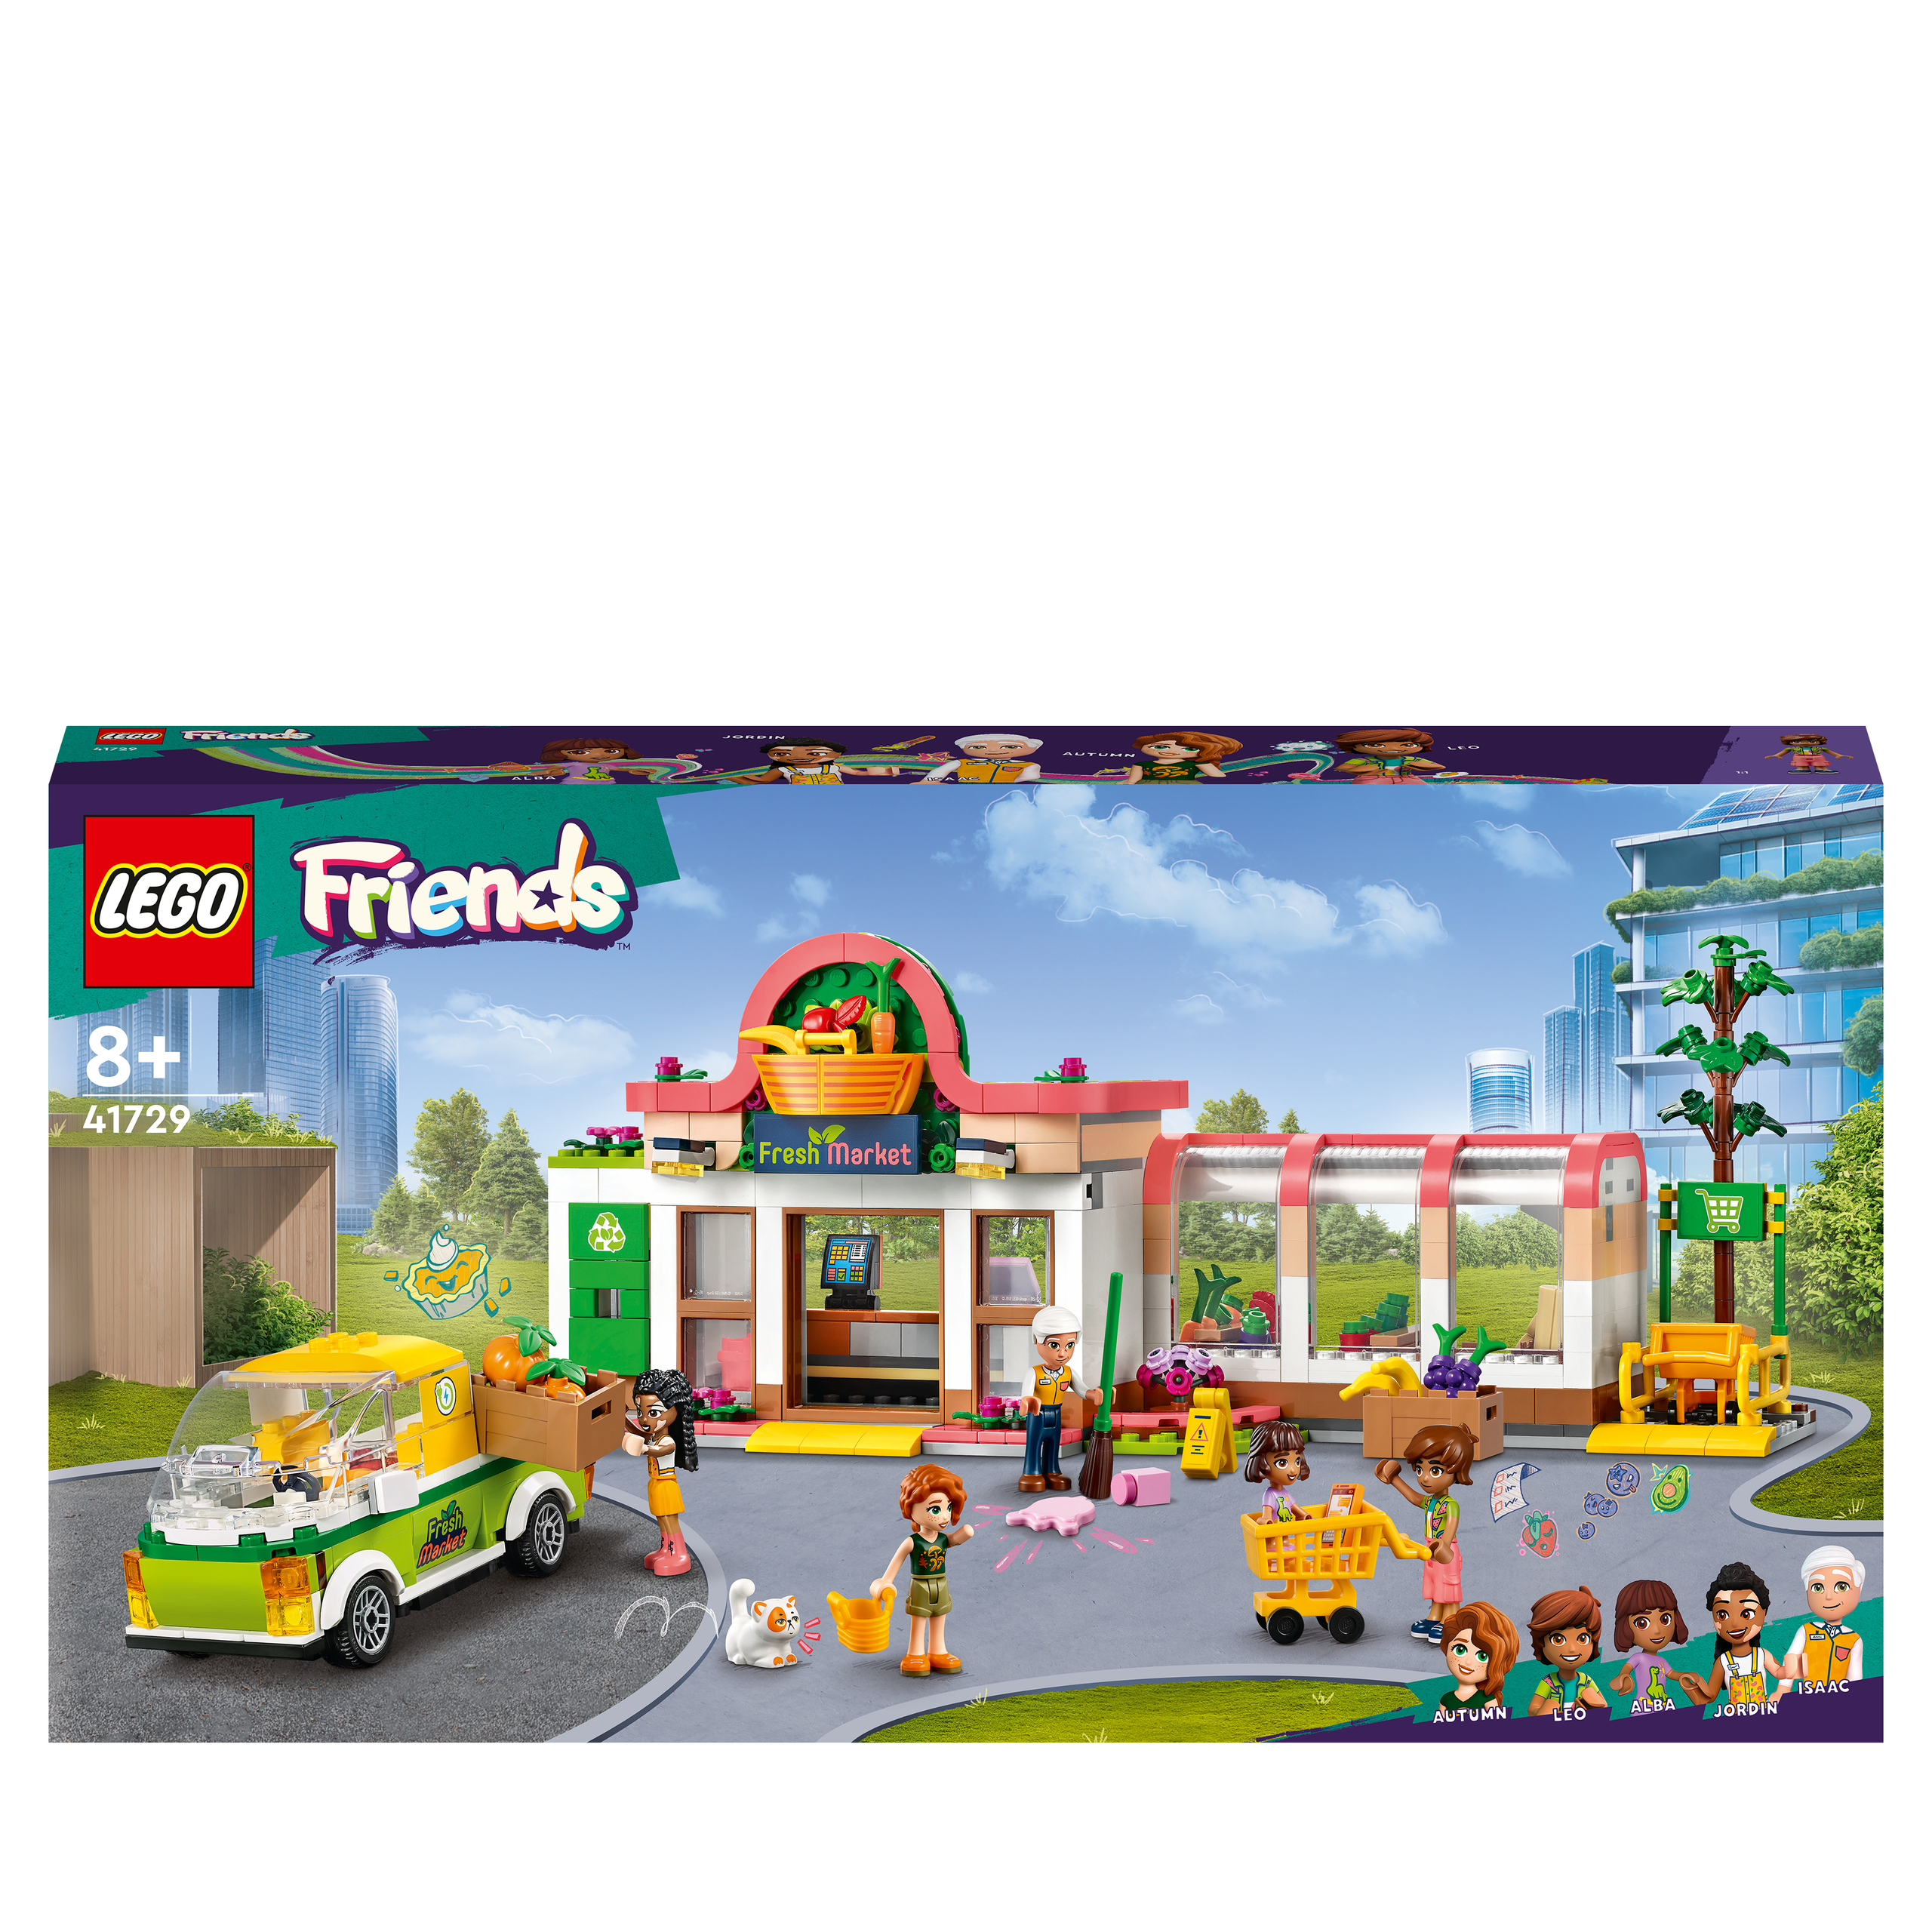 LEGO®FRIENDS 41711 - L’ÉCOLE D’ART D'EMMA